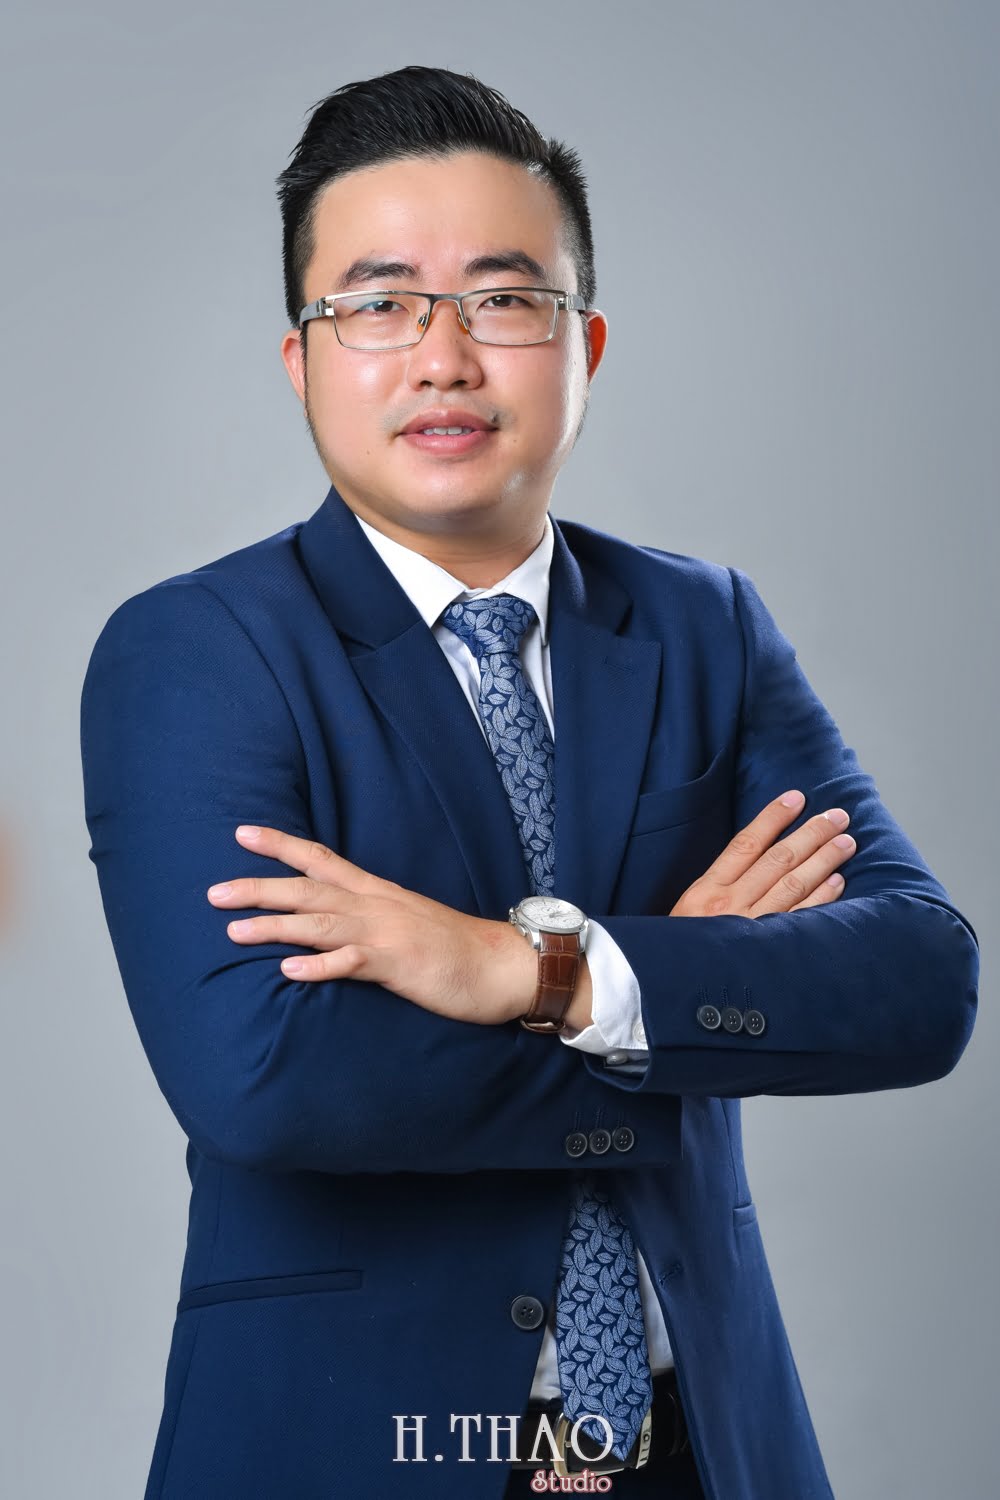 Anh profile cong ty 8 - Tổng hợp ảnh profile nghề nghiệp bác sĩ, ngân hàng đẹp- HThao Studio